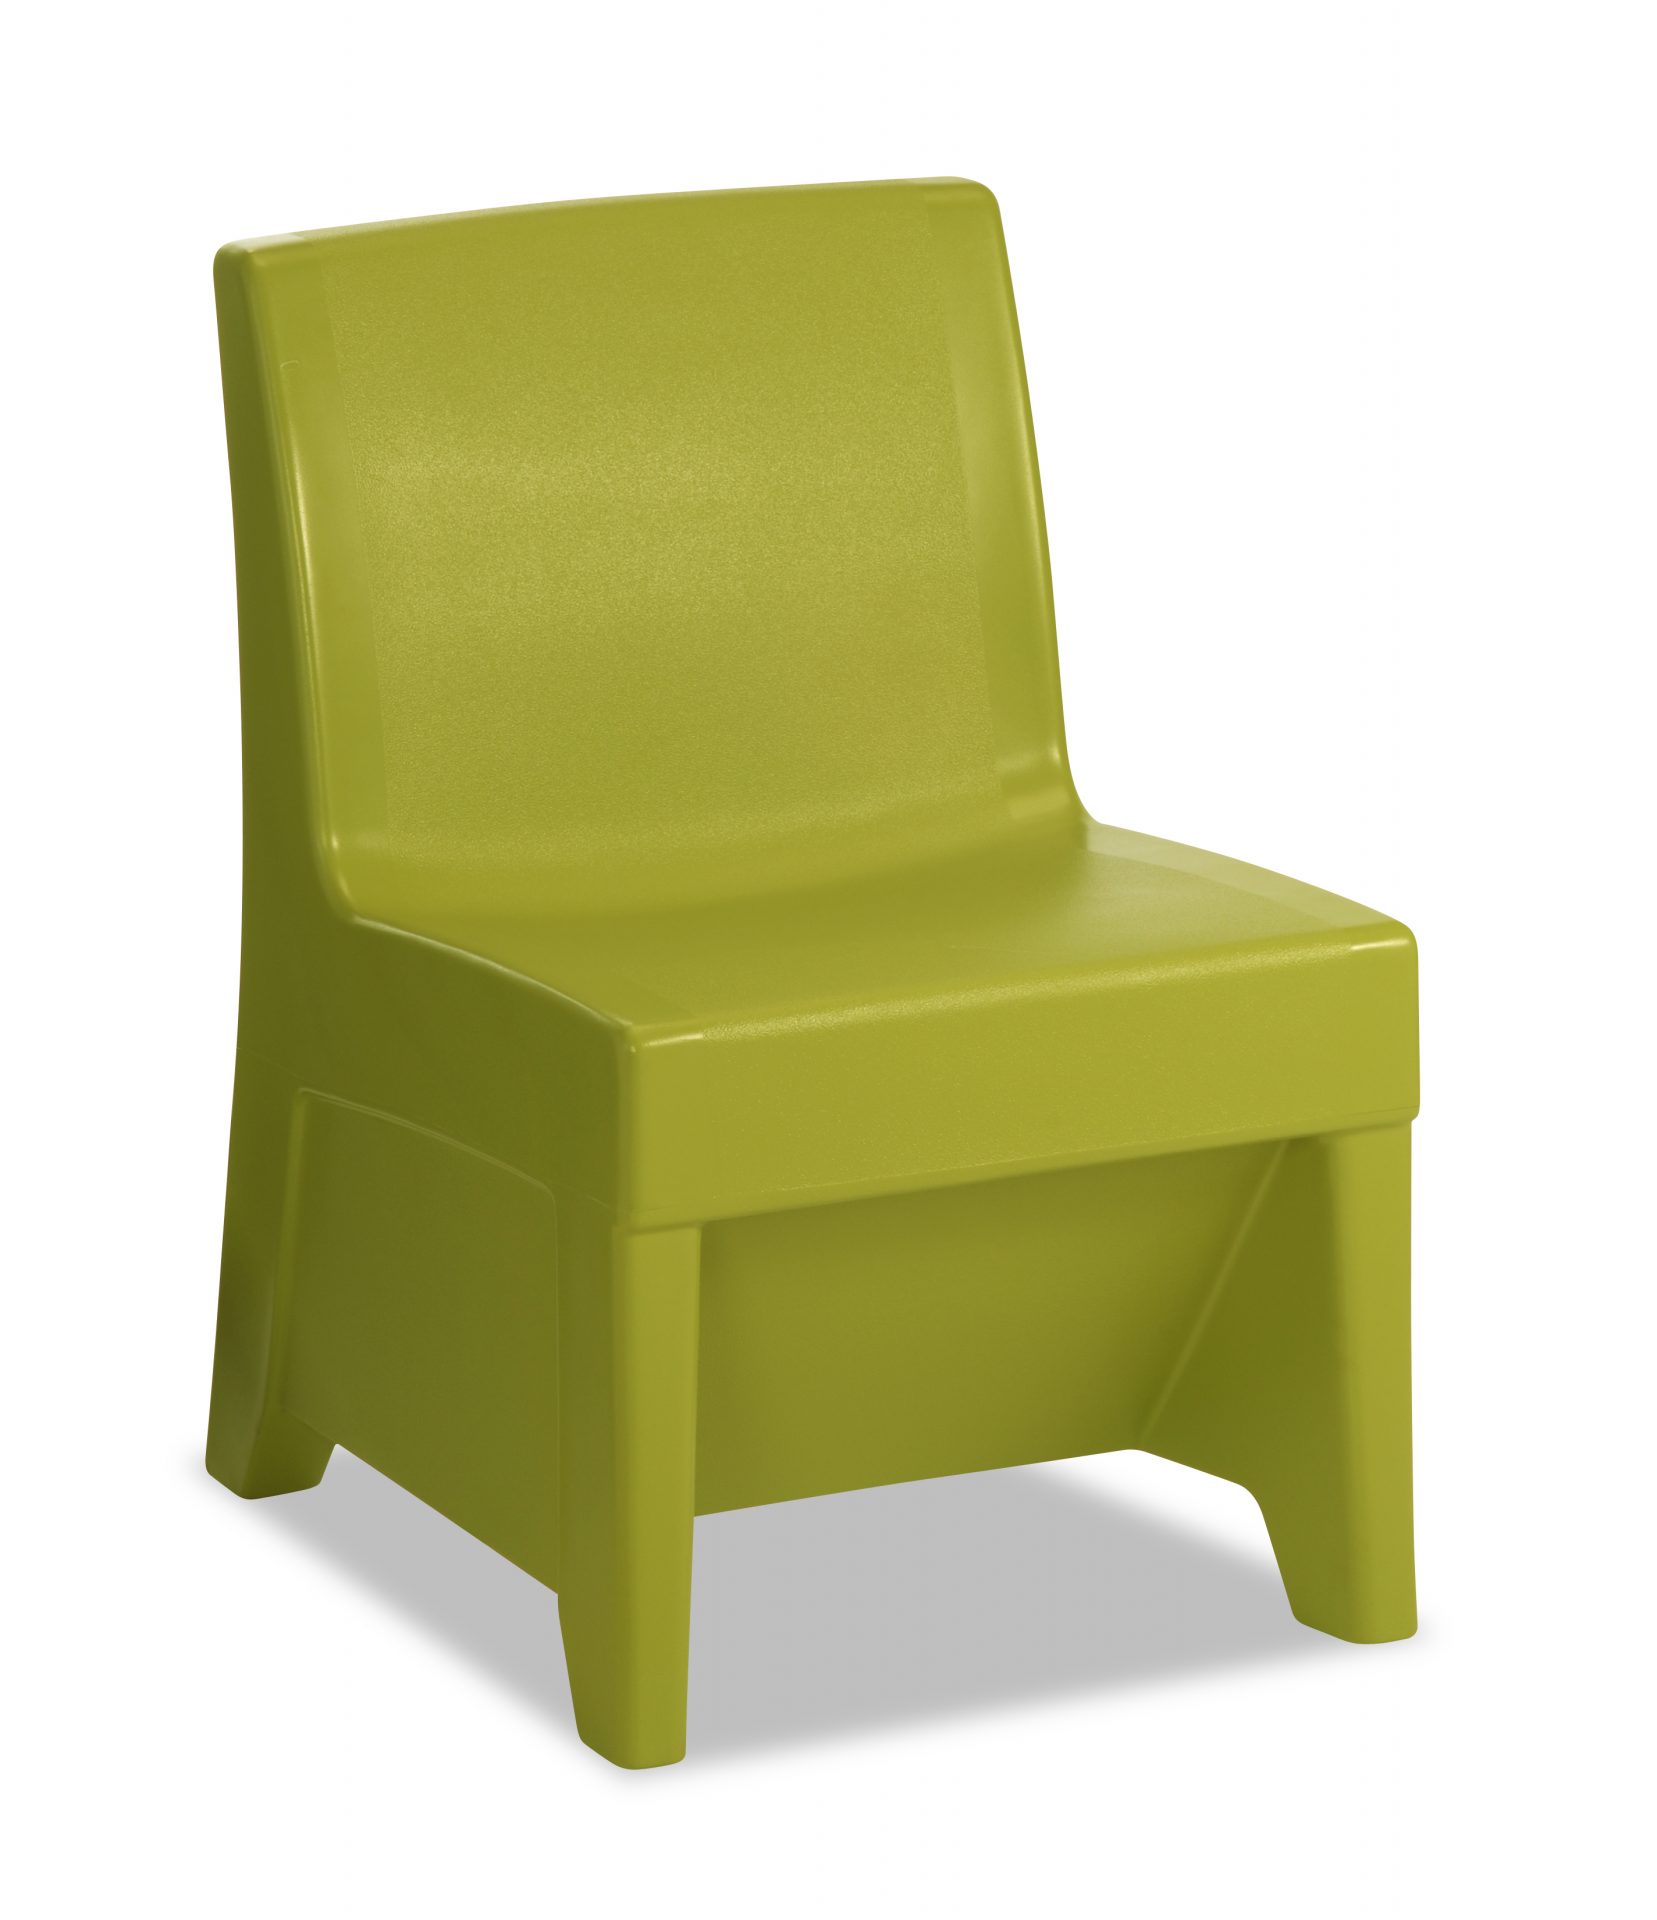 Meadow color ligature resistant chair